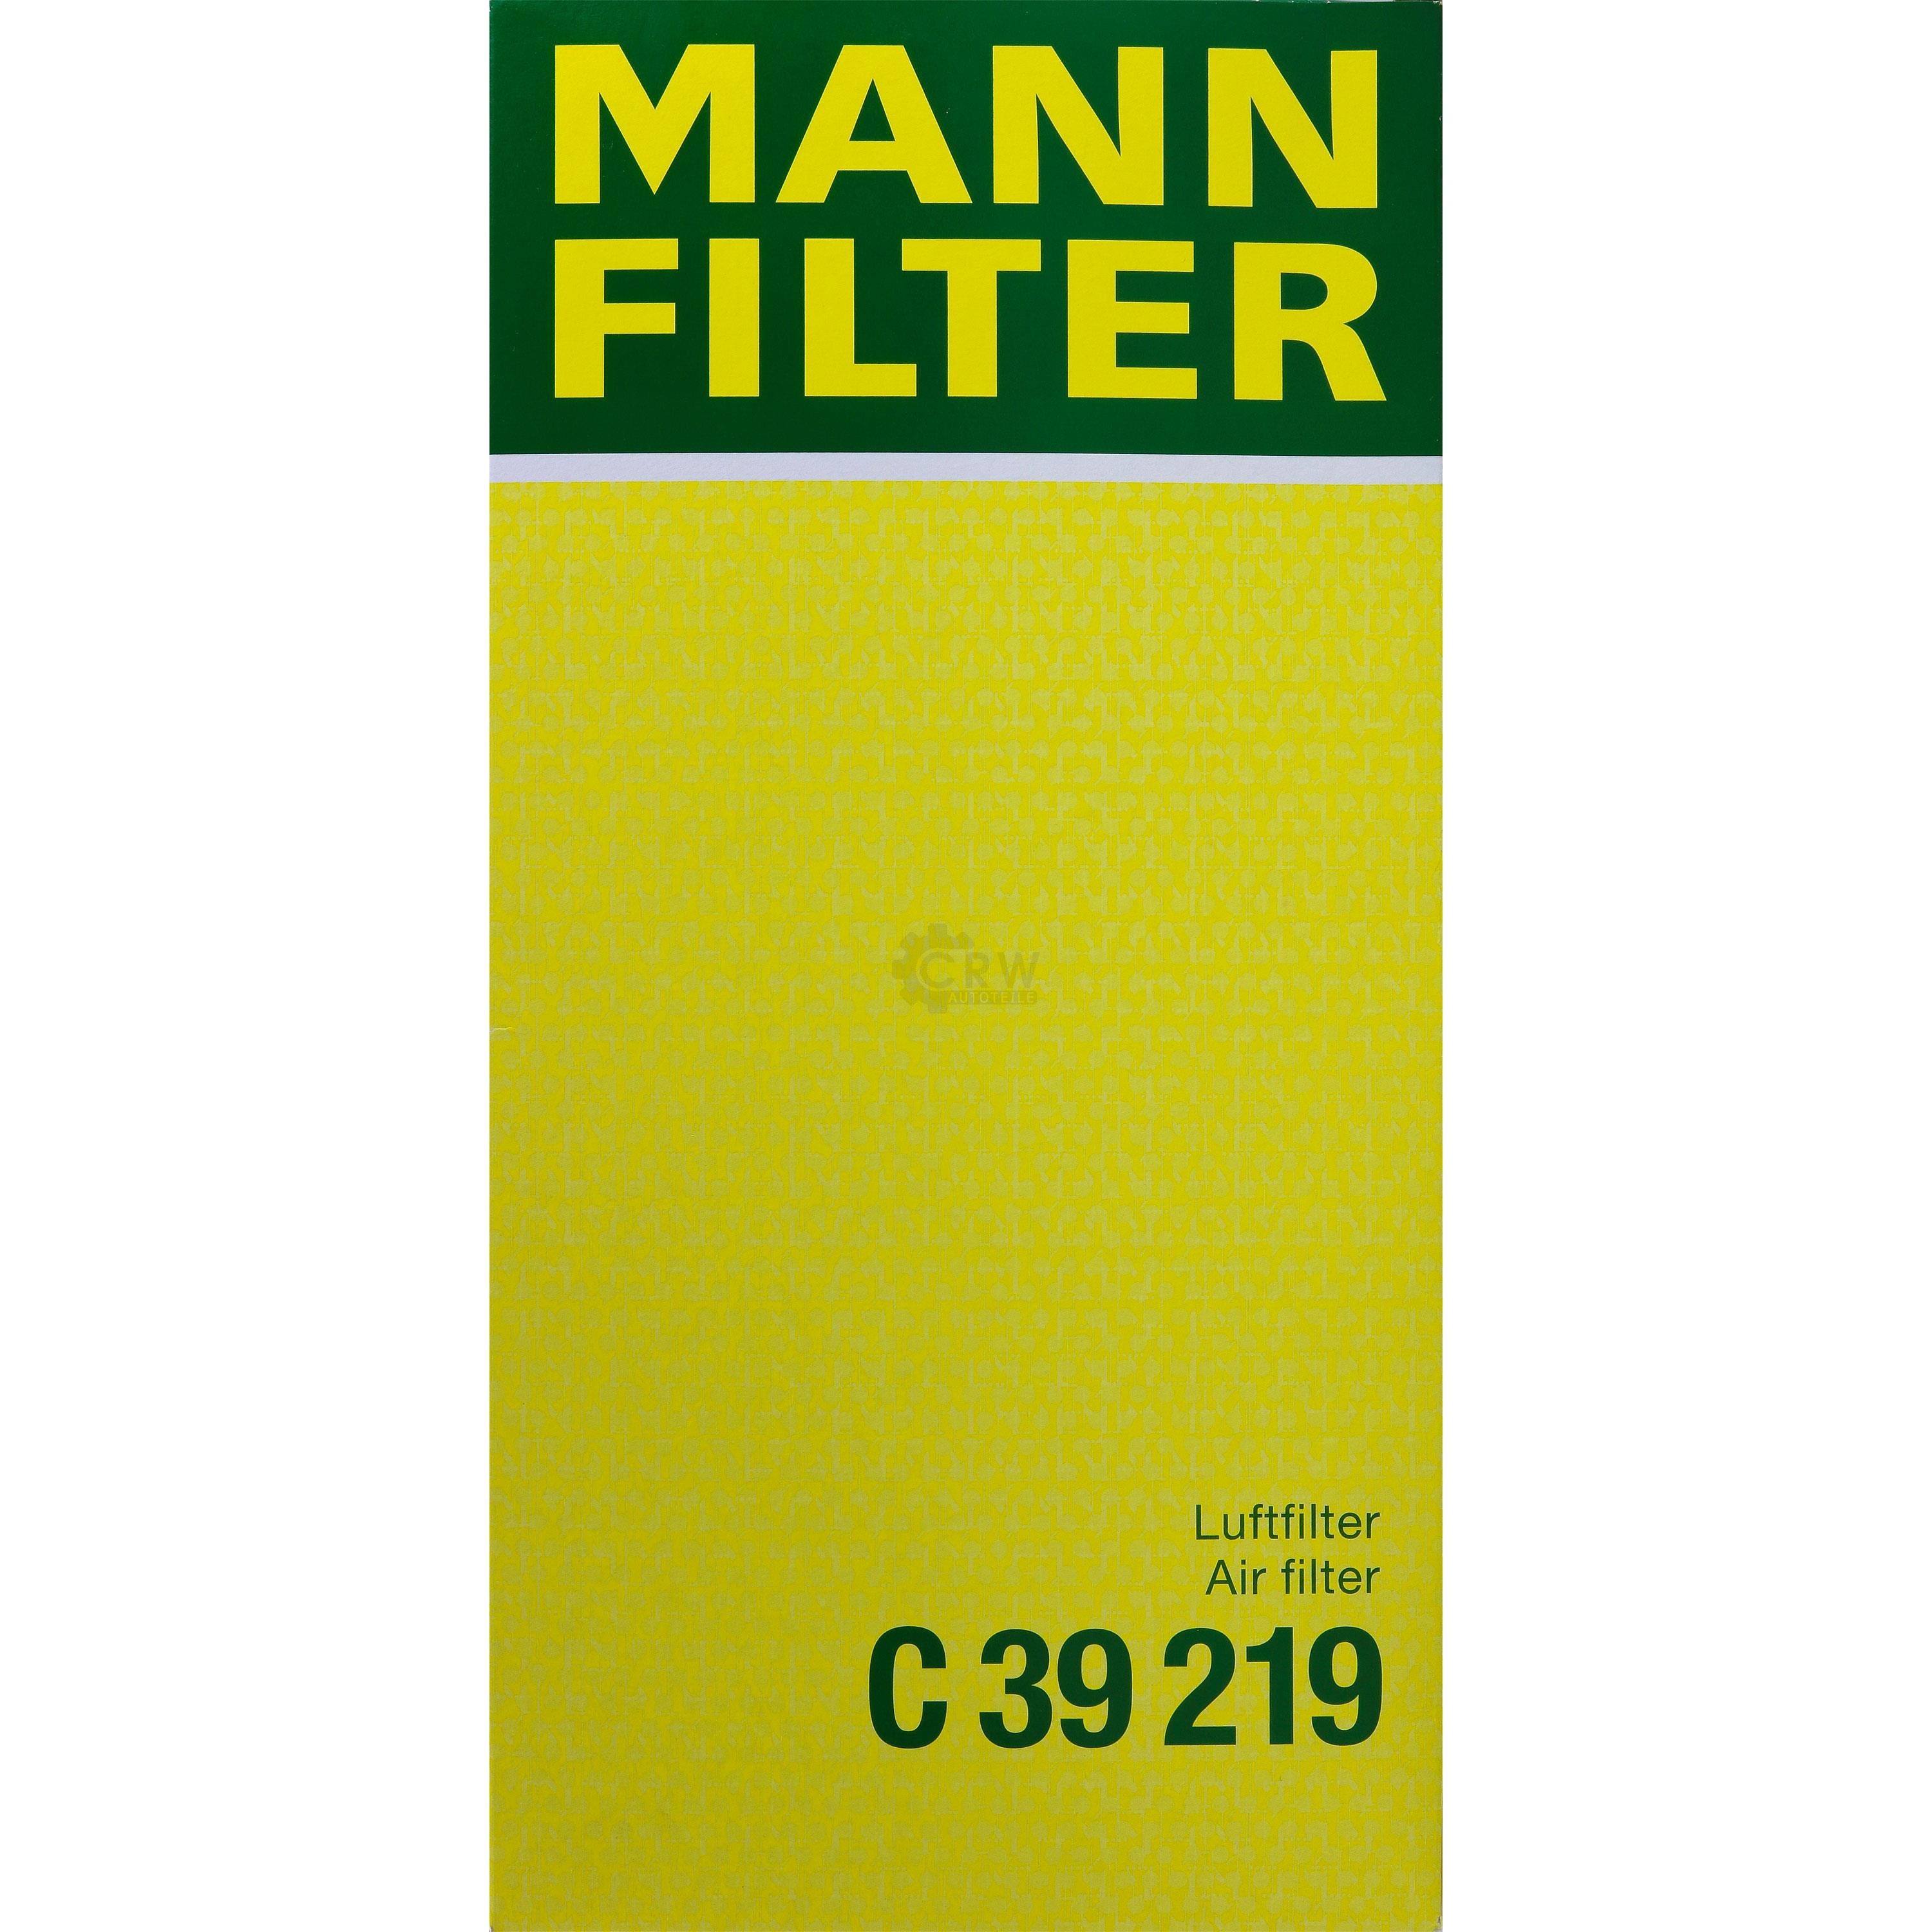 MANN-FILTER Luftfilter für VW Touareg 7P5 3.0 V6 TDI 4.2 V8 7LA 7L6 7L7 2.5